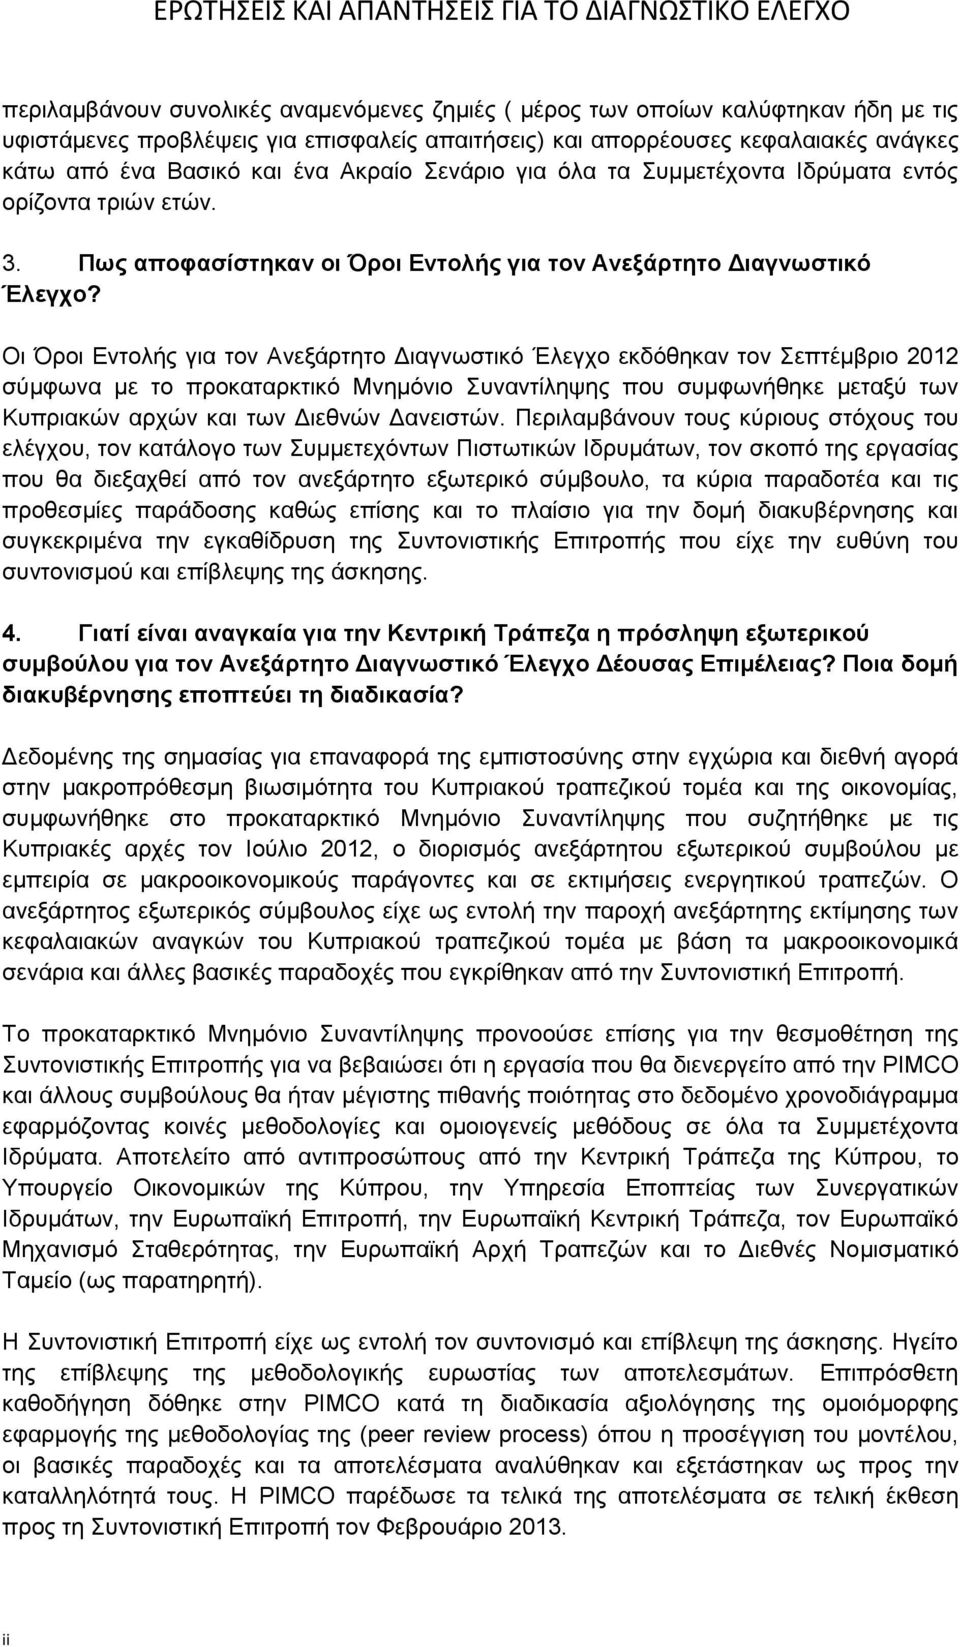 Οι Όροι Εντολής για τον Ανεξάρτητο Διαγνωστικό Έλεγχο εκδόθηκαν τον Σεπτέμβριο 2012 σύμφωνα με το προκαταρκτικό Μνημόνιο Συναντίληψης που συμφωνήθηκε μεταξύ των Κυπριακών αρχών και των Διεθνών